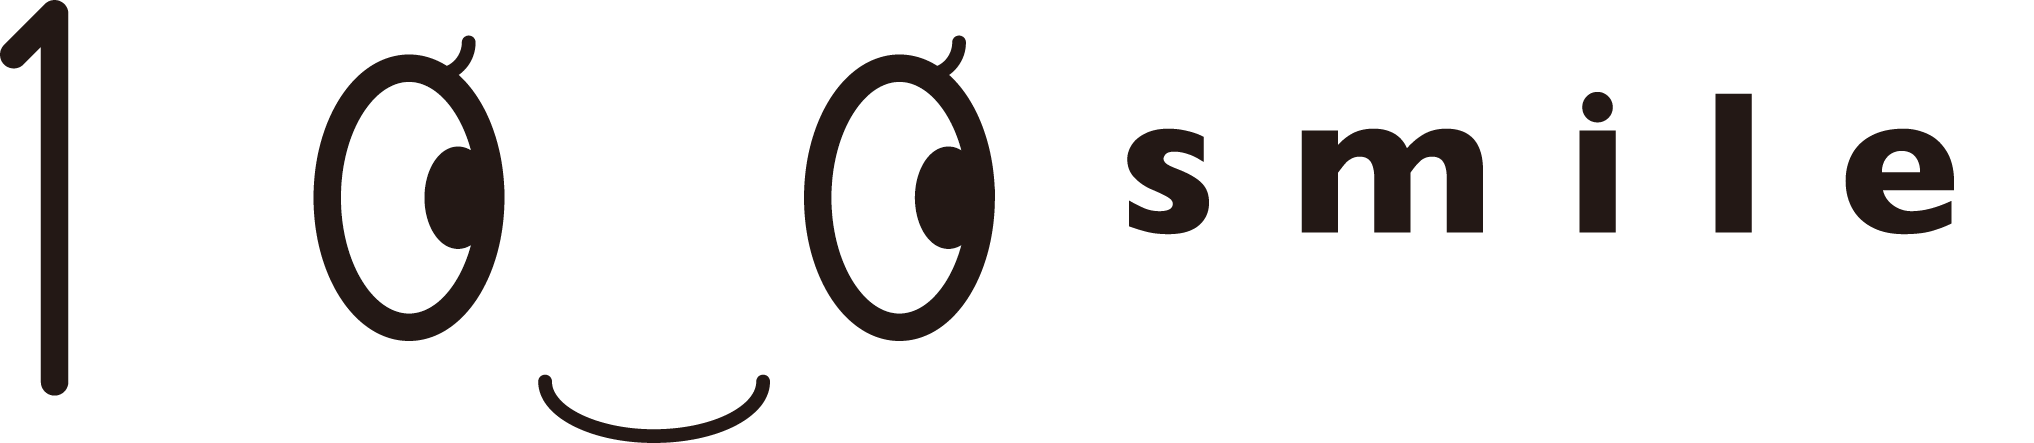 100smile Logo